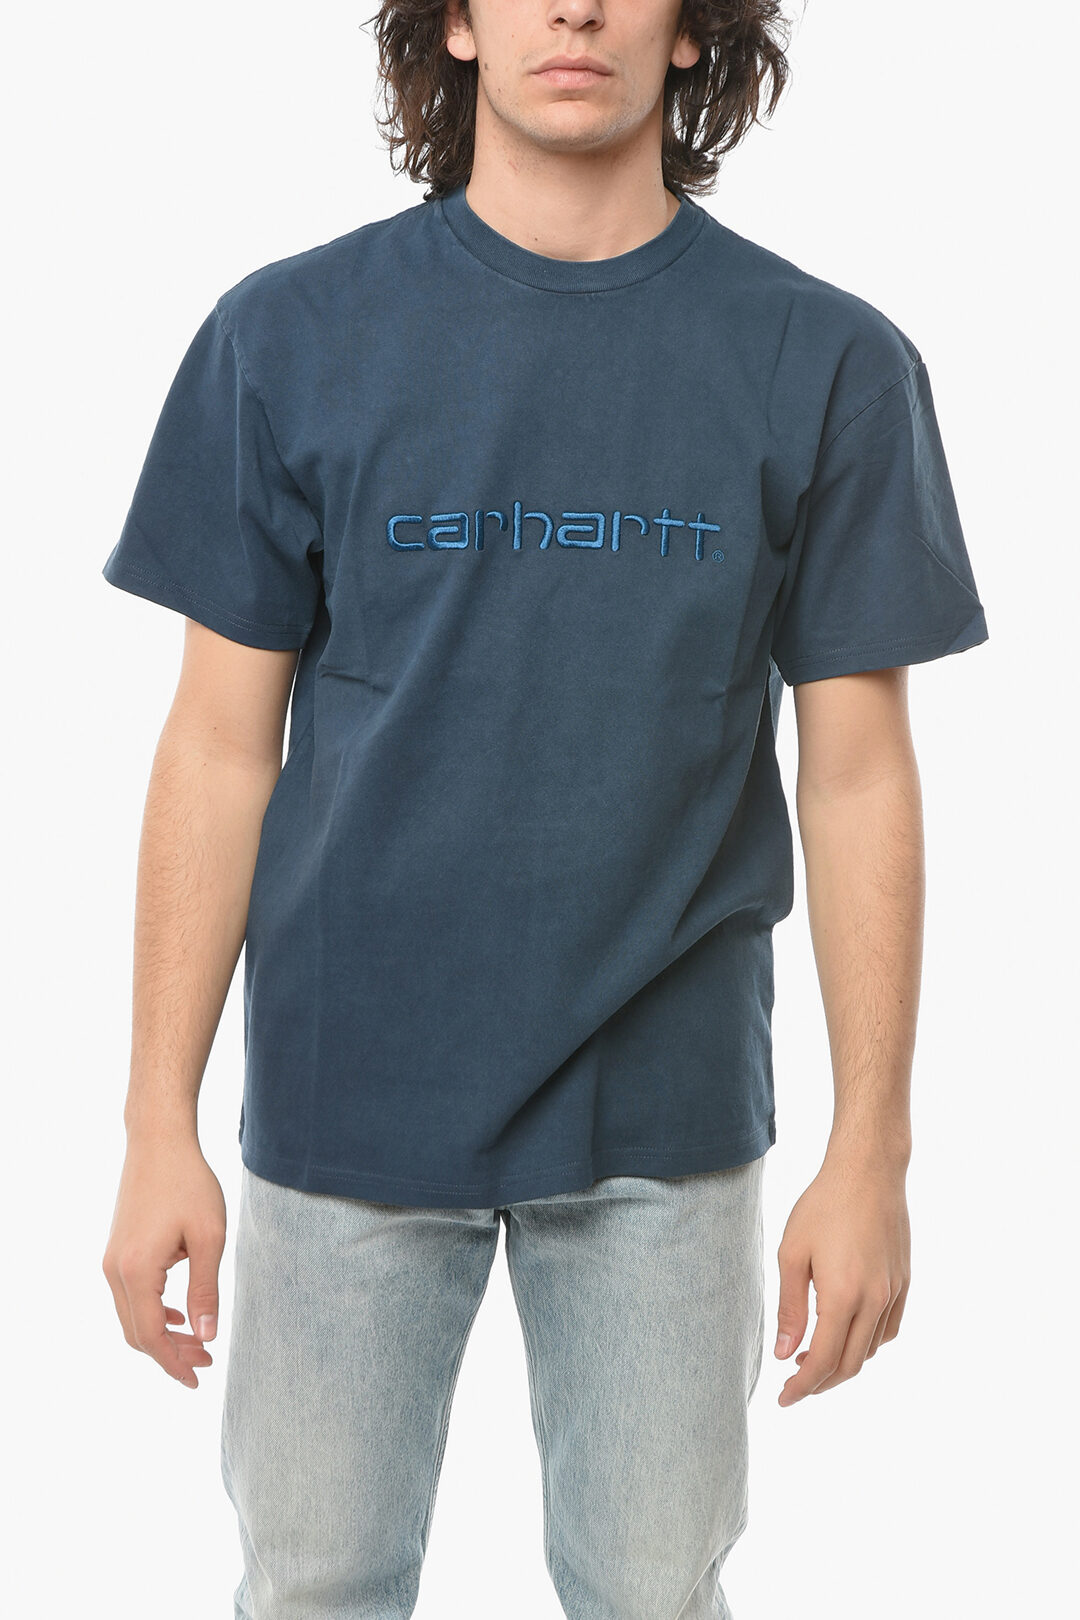 ved godt locker Selskab Carhartt Acid Wash Effect Crew-Neck T-shirt with Embossed-Logo men -  Glamood Outlet